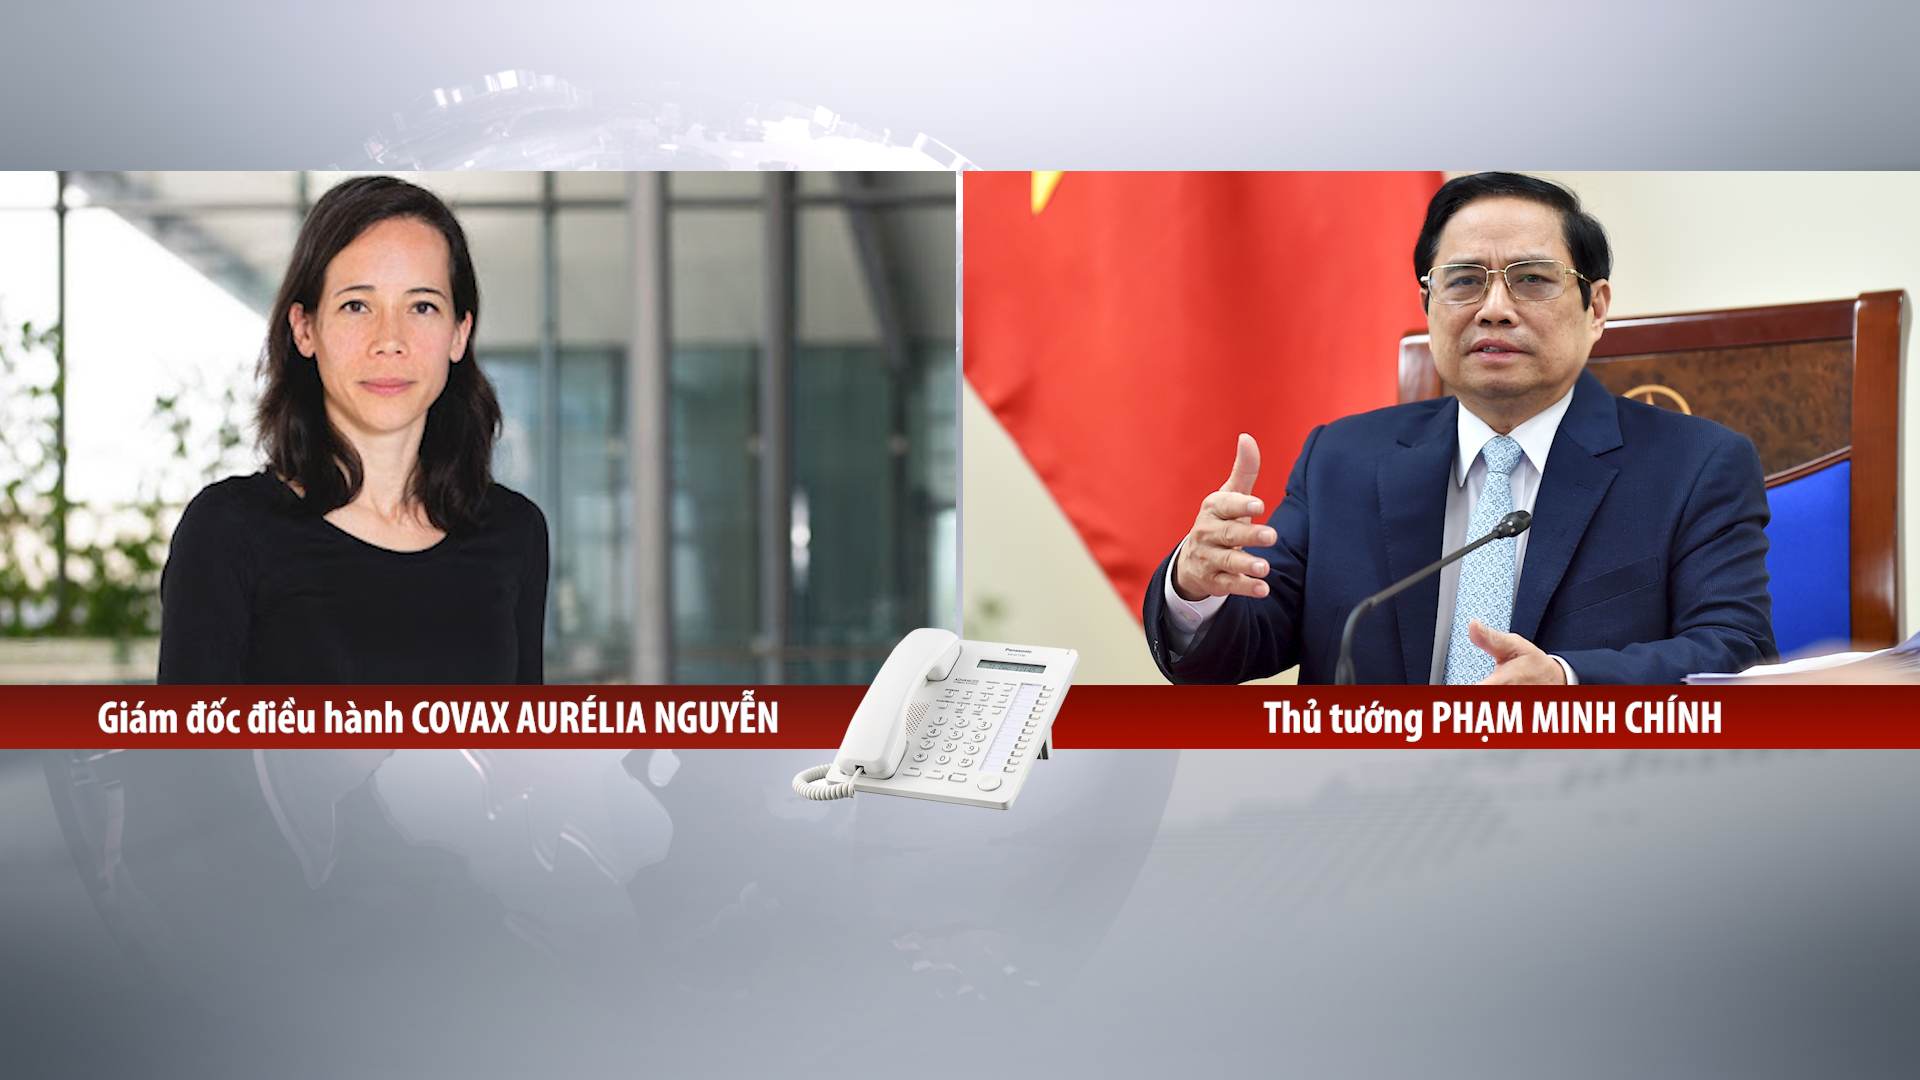 Họp trực tuyến với bà Aurélia Nguyen, Thủ tướng đề nghị COVAX ưu tiên phân bổ vaccine cho Việt Nam càng nhanh, càng nhiều càng tốt-